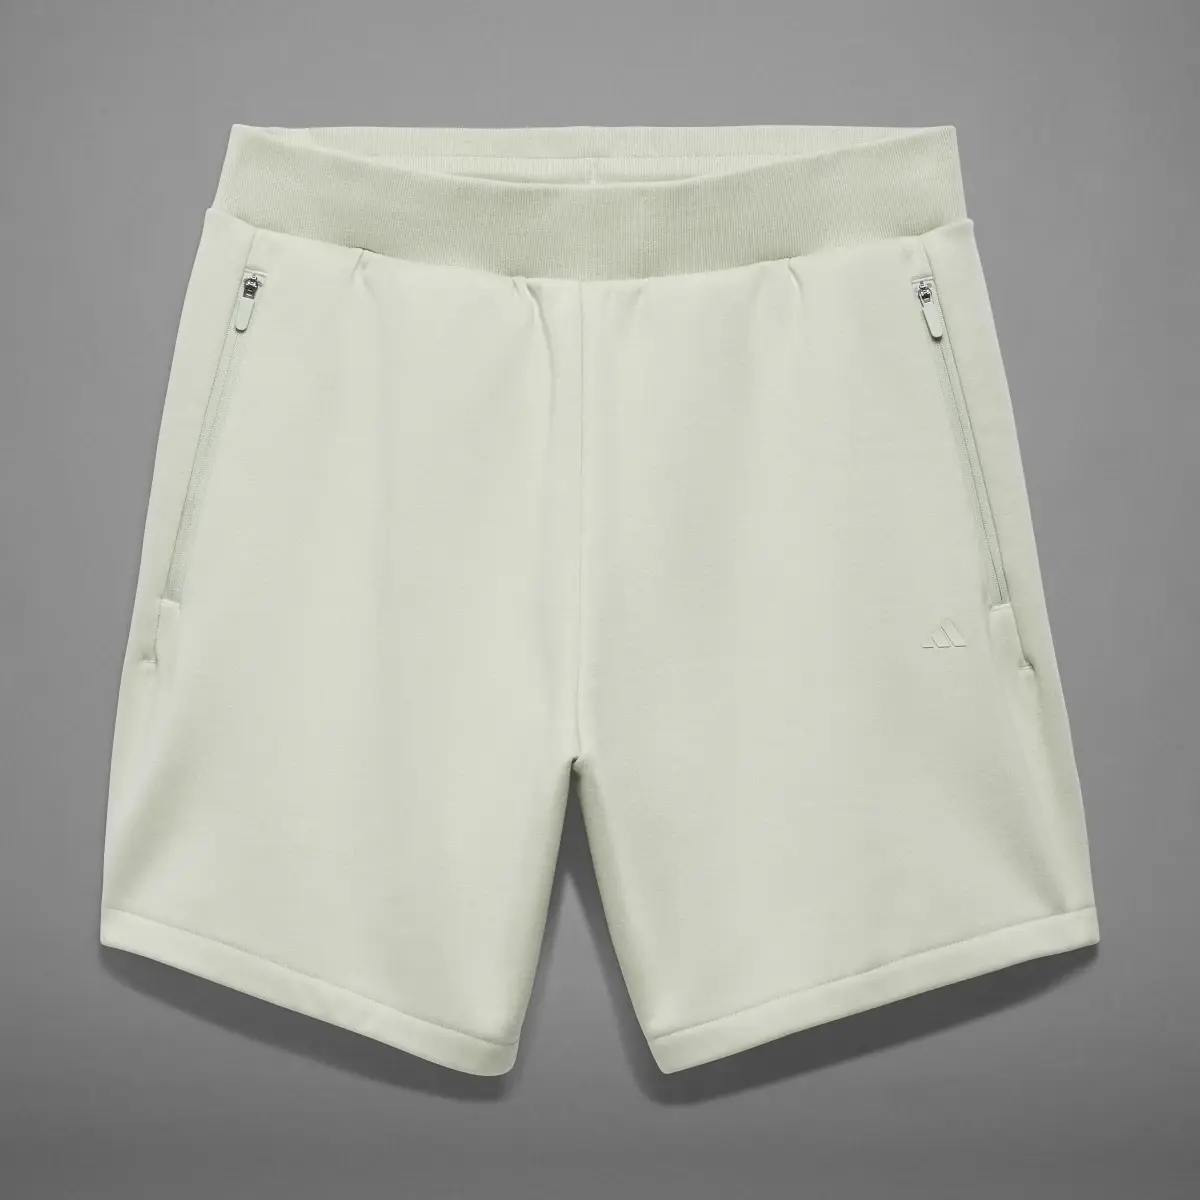 Adidas Shorts de Básquet adidas. 1